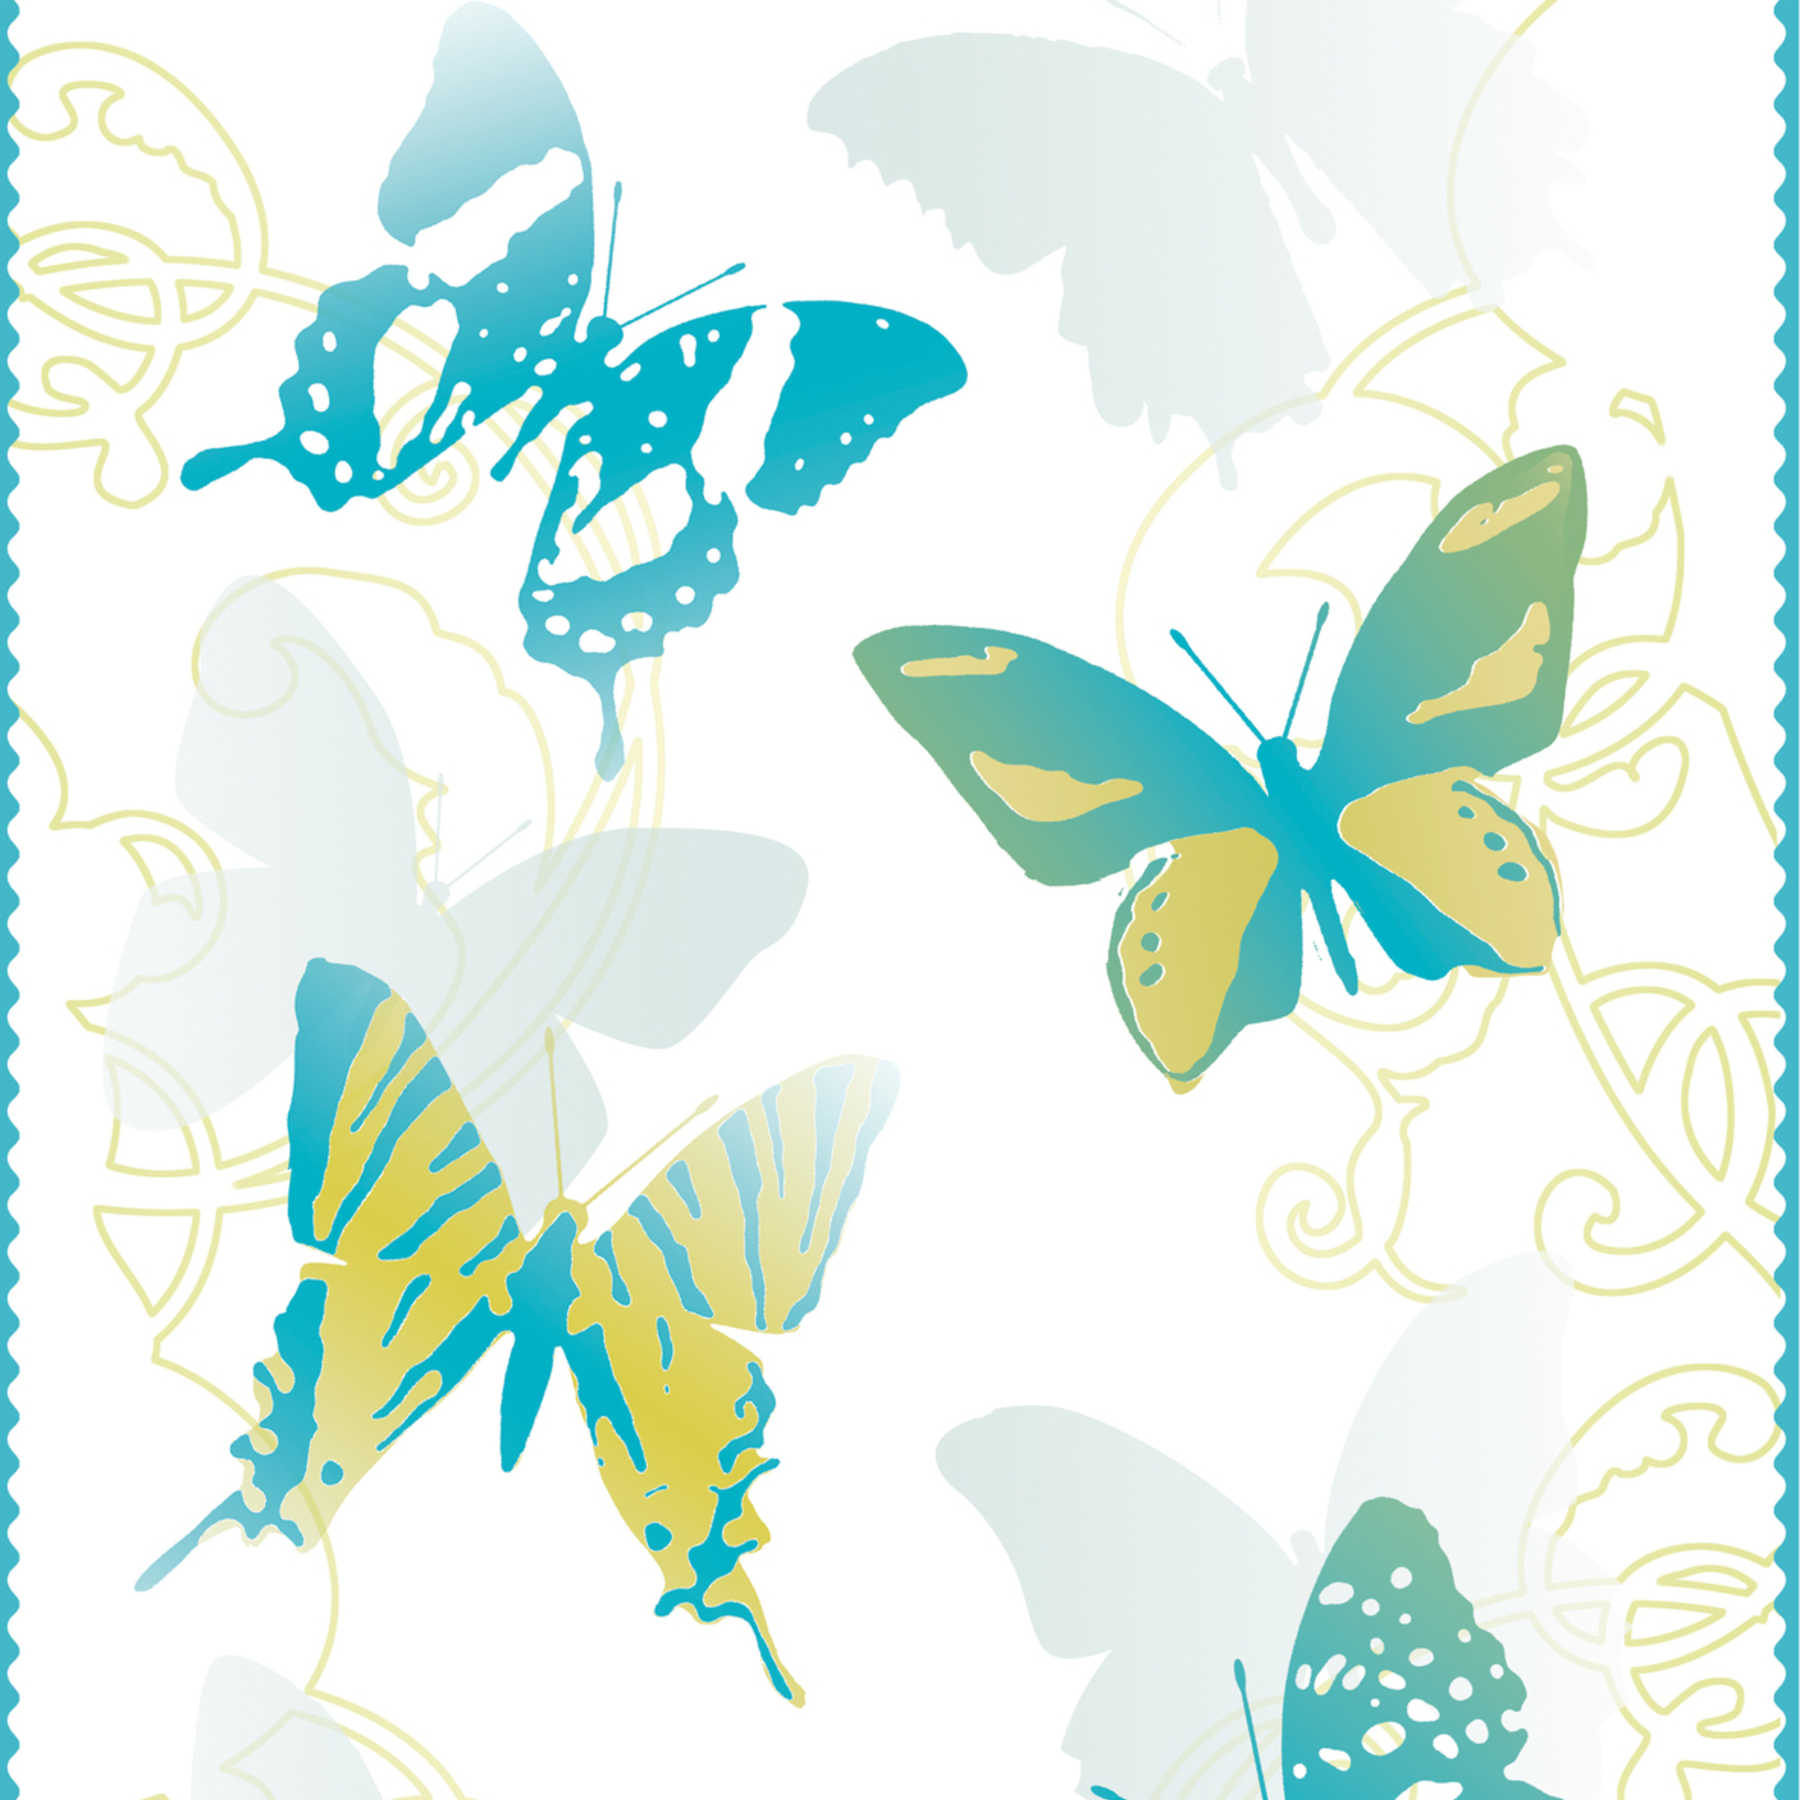             Schmetterling Tapete für Kinderzimmer – Blau, Gelb, Weiß
        